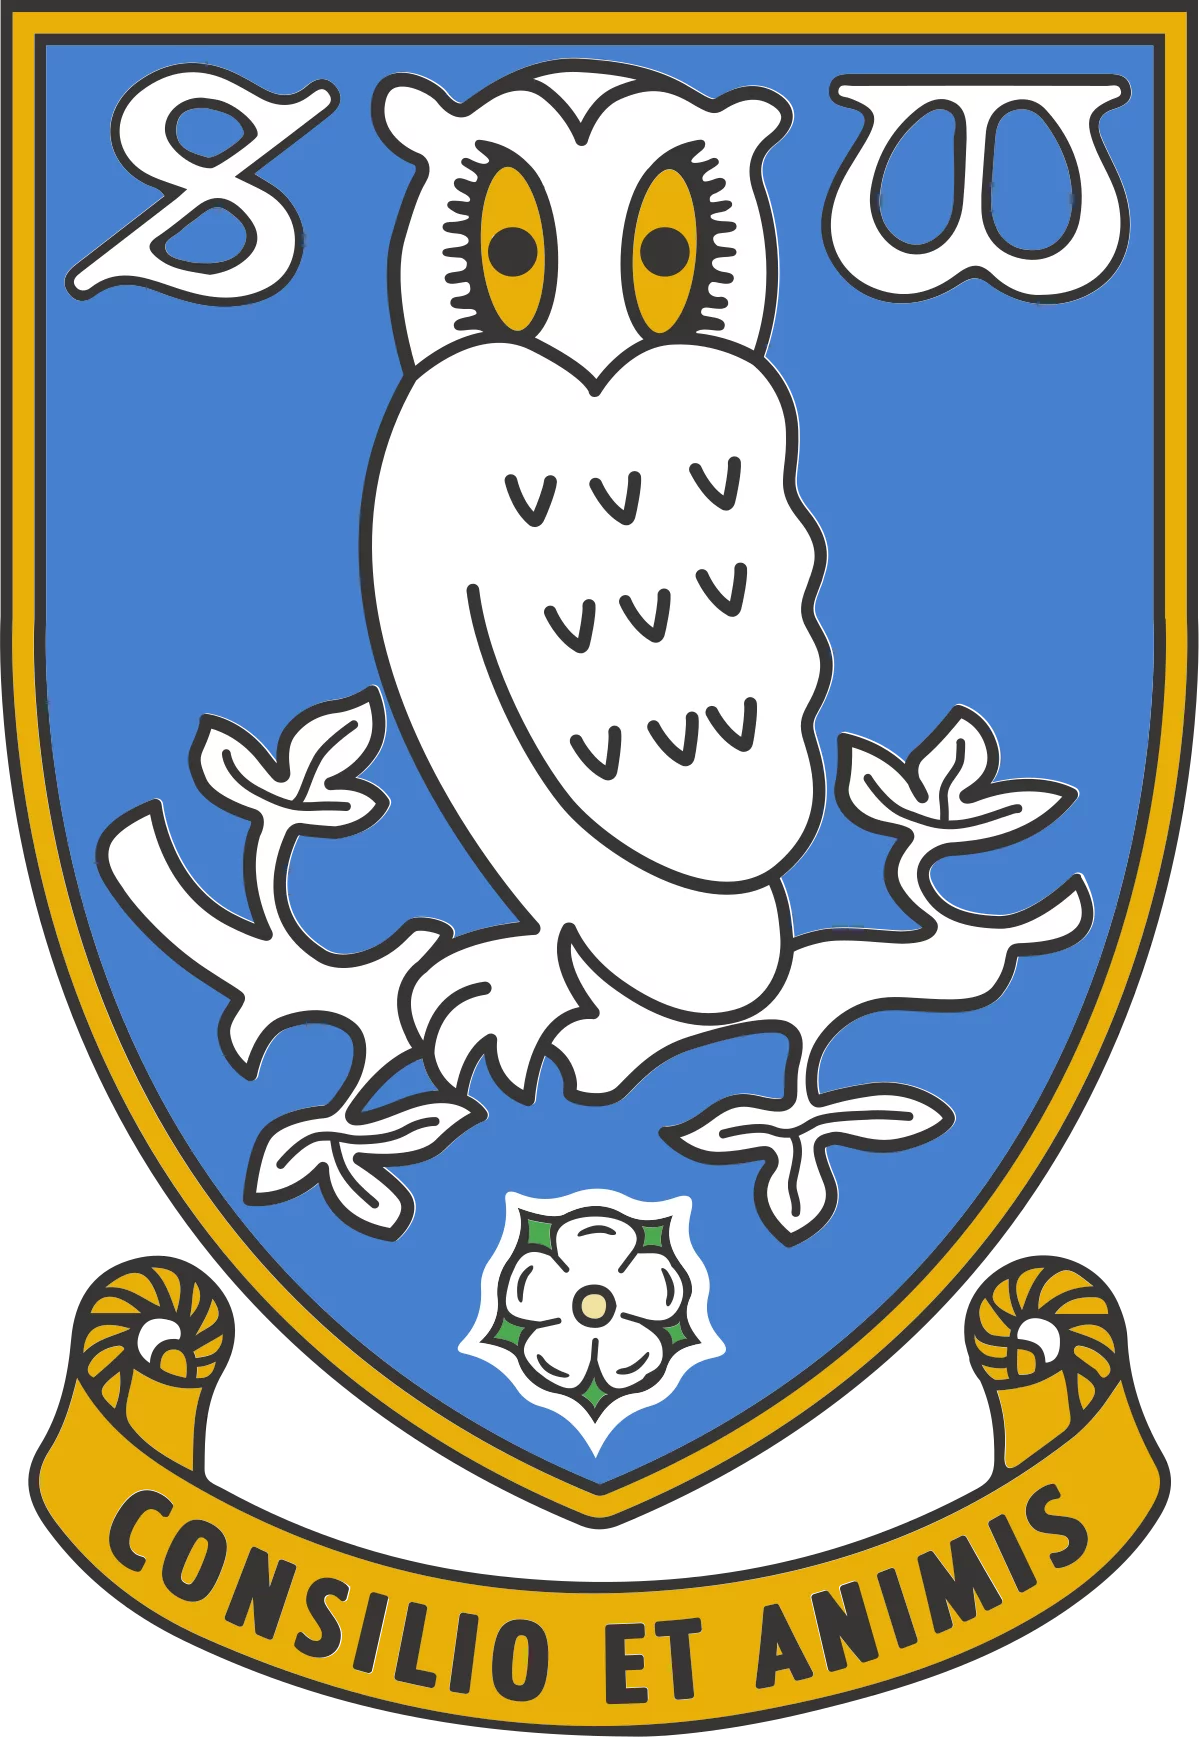 Sheffield Wednesday FC logo